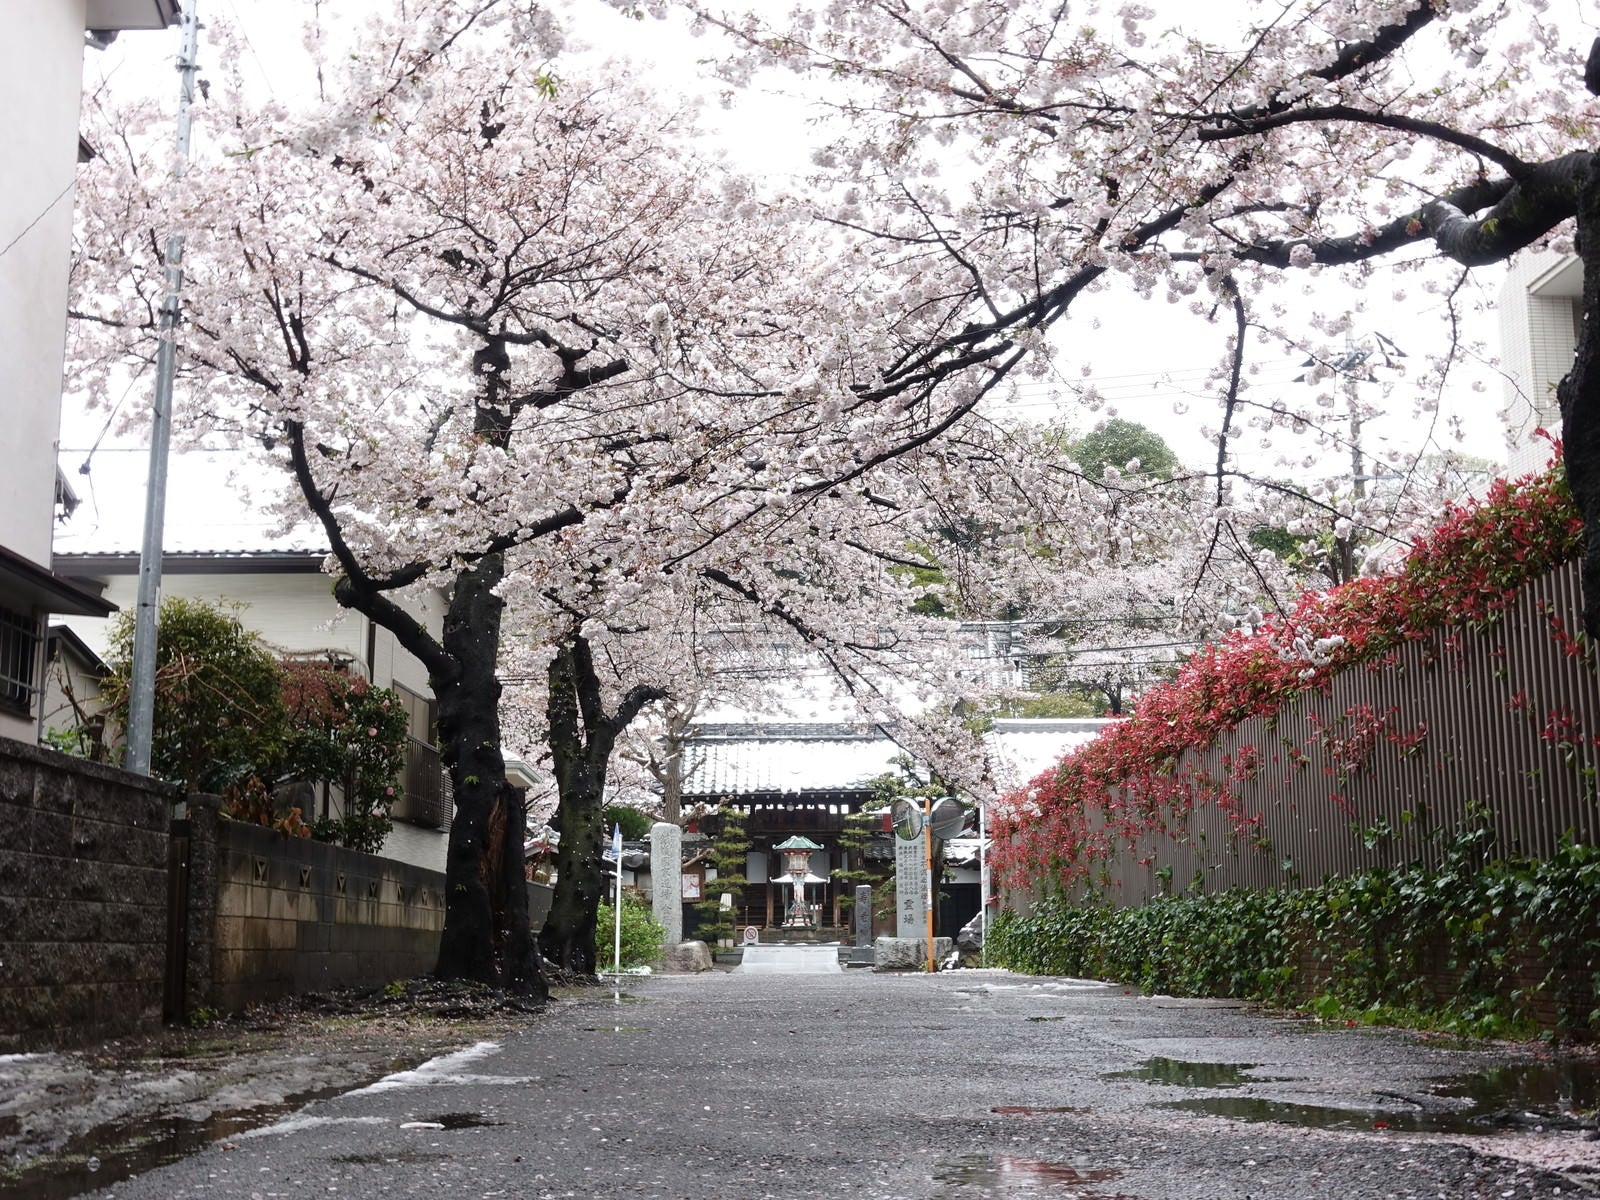 「桜舞い散る路地」の写真